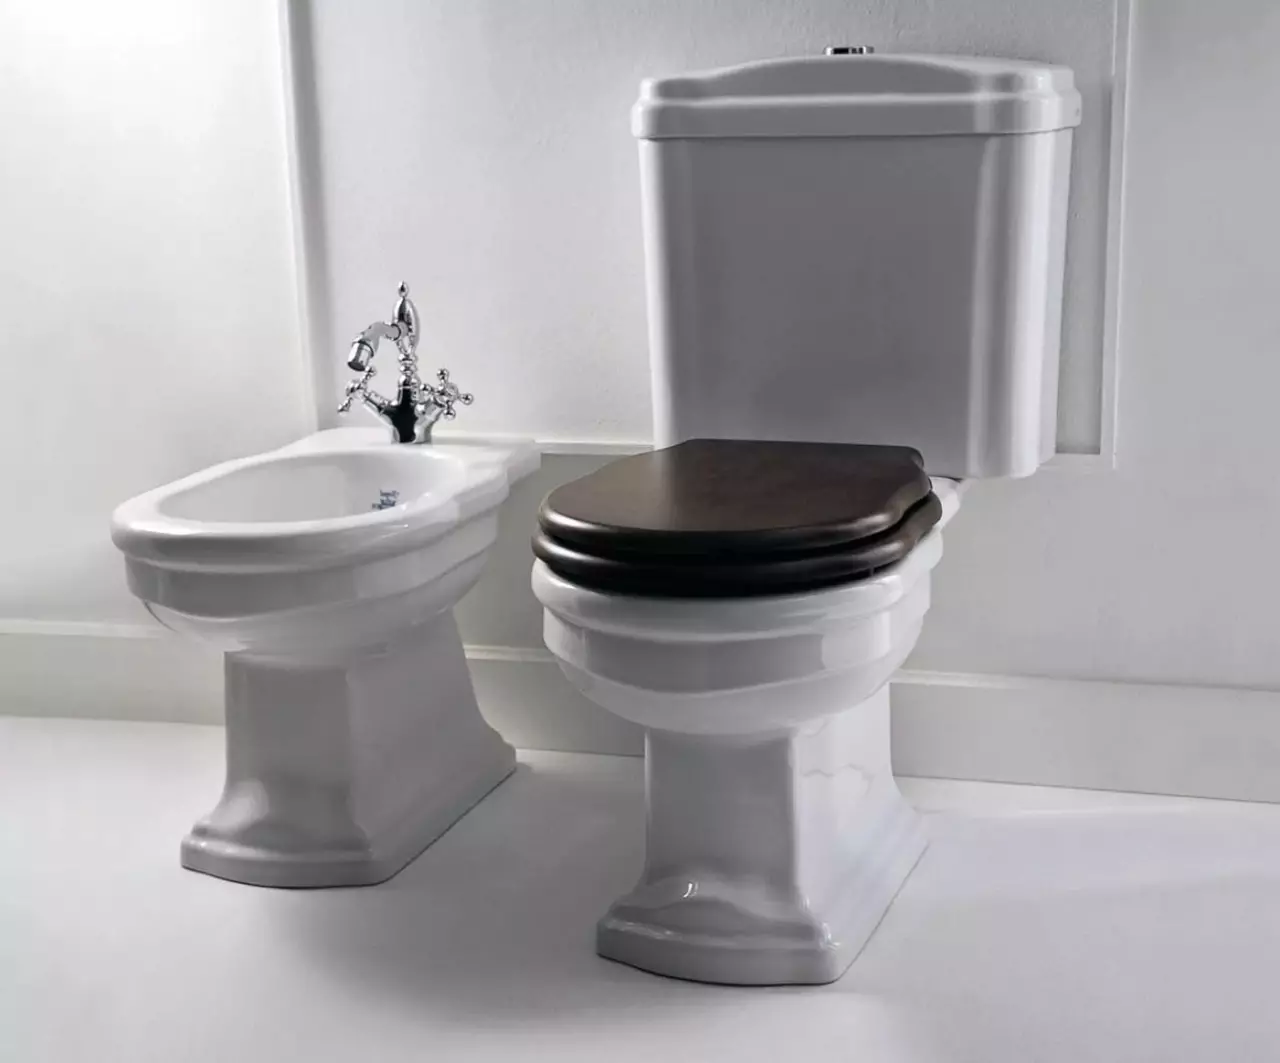 Kas ir labāks tualetam: porcelāns vai fajanss? SanataDayans un Sanfarfora plusi un mīnusi. Kāds materiāls ir labāks? 10546_2